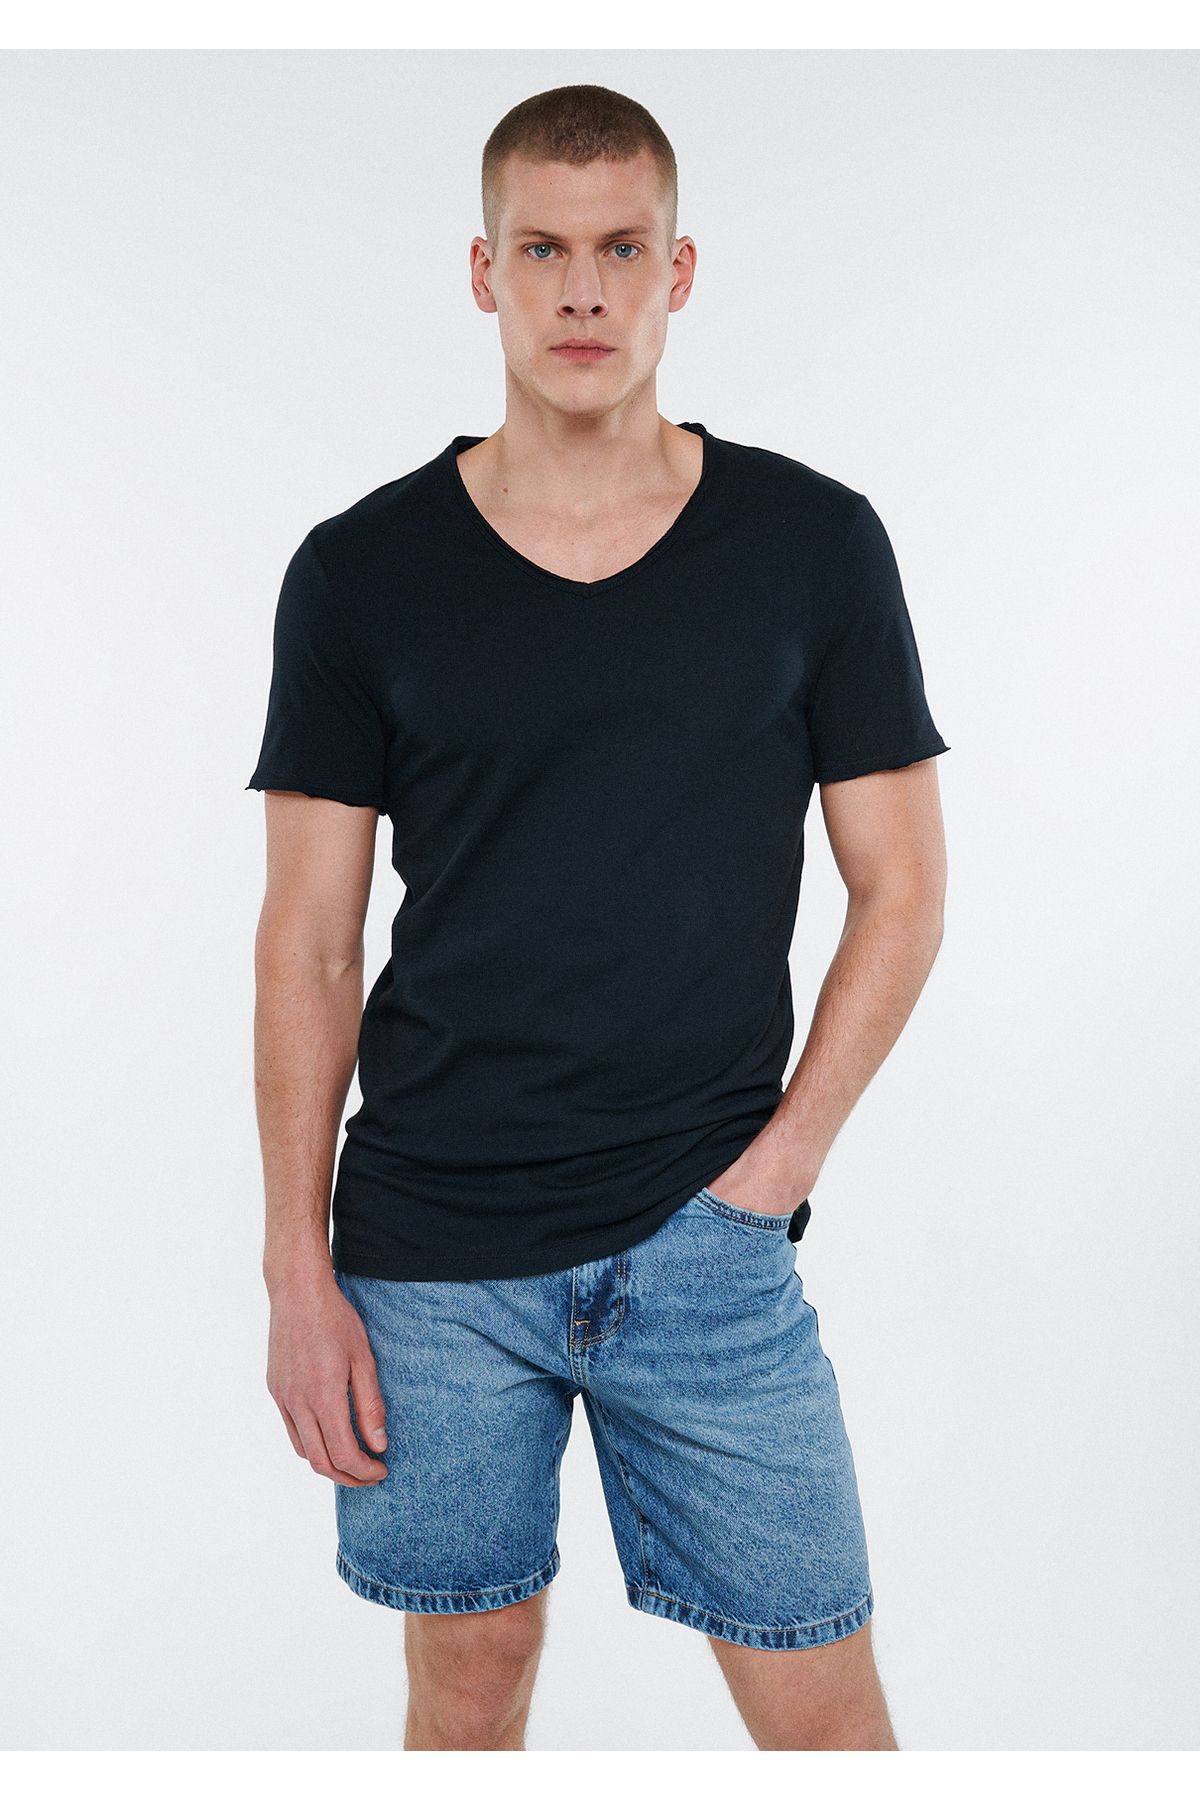 تی شرت مردانه رنگ مشکی از برند ماوی Mavi (برند ترکیه)